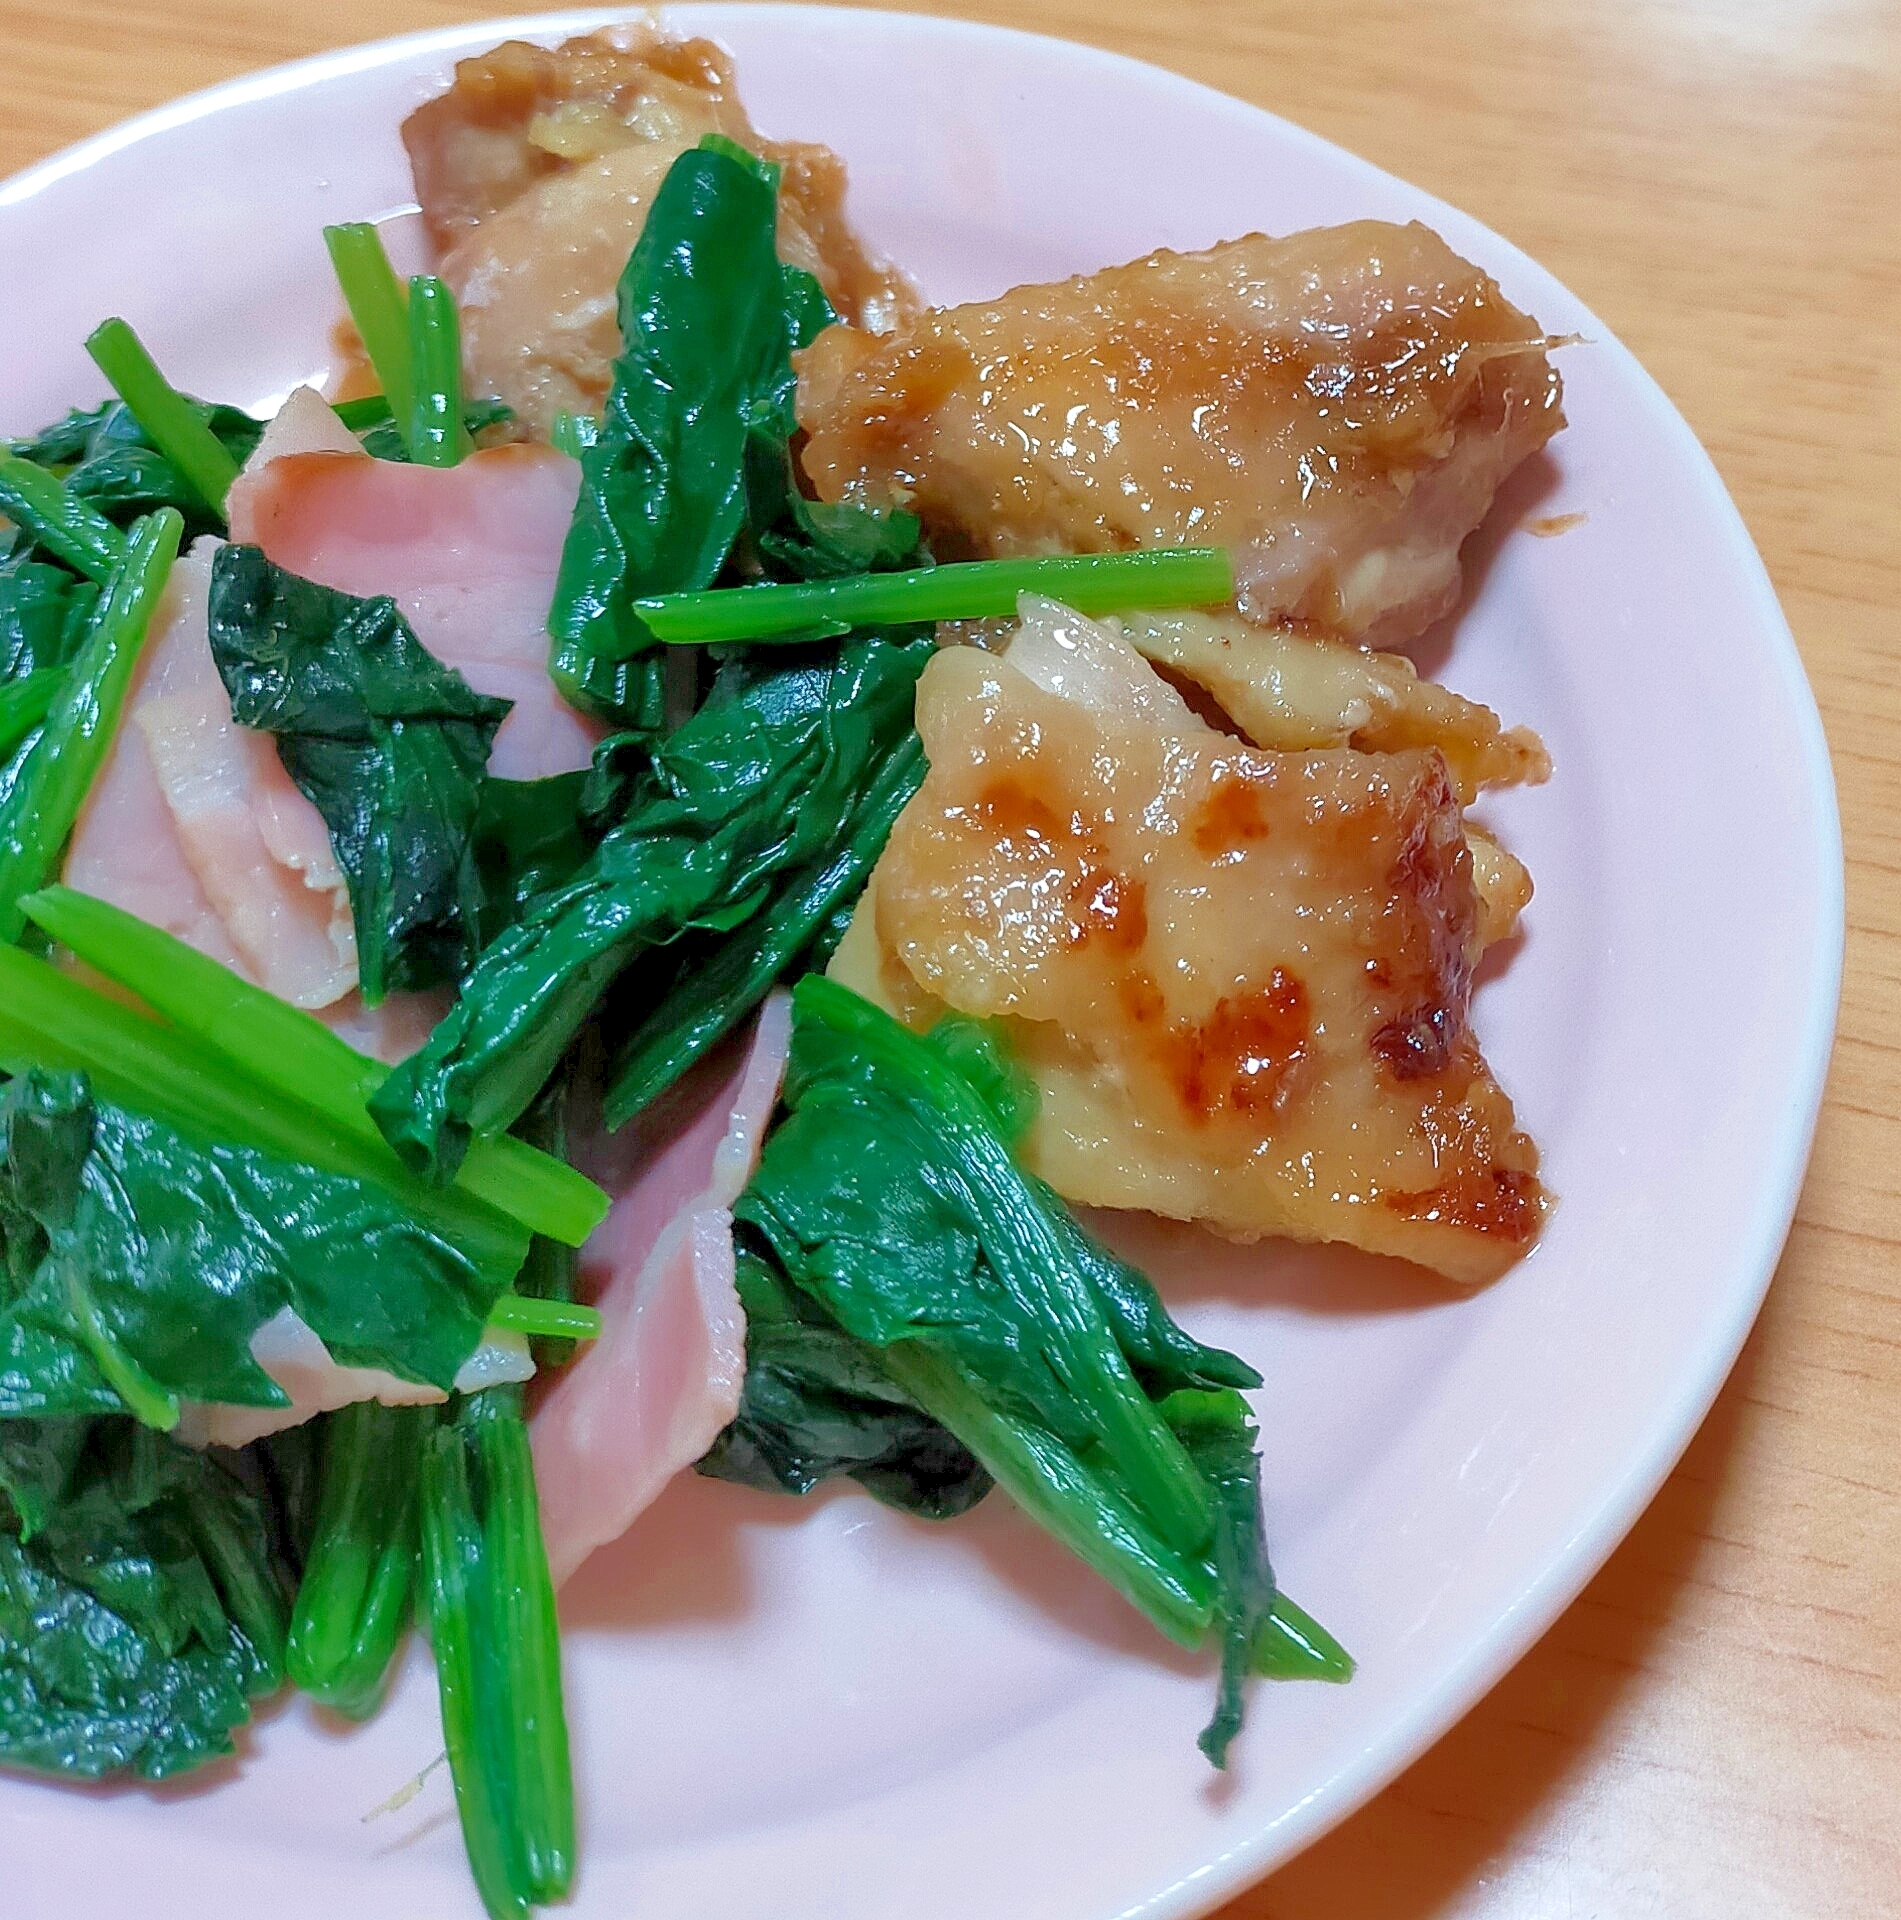 鶏モモ肉の生姜焼き